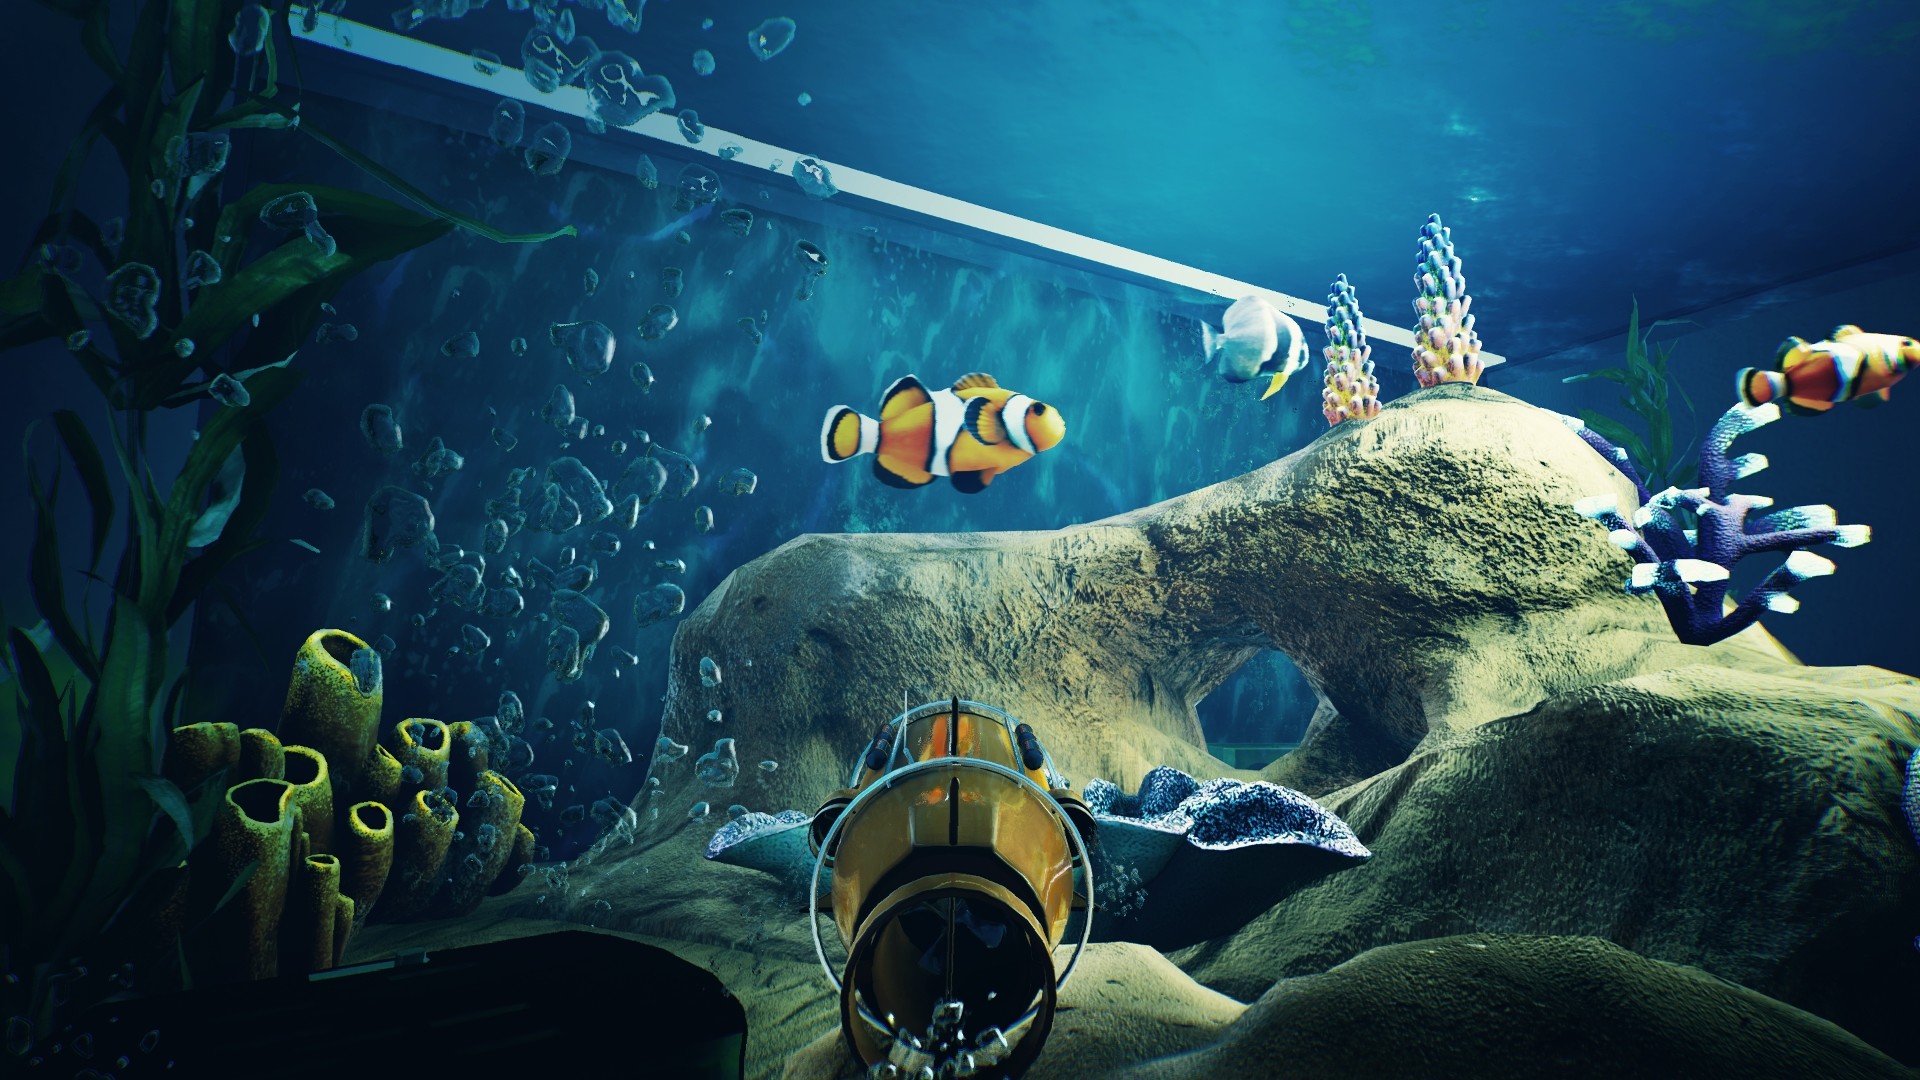 水槽管理シム Fishkeeper 発表 小型潜水艦型カメラで 魚視点 で水槽を泳ぎ回れる 本格派アクアリウムゲーム Automaton